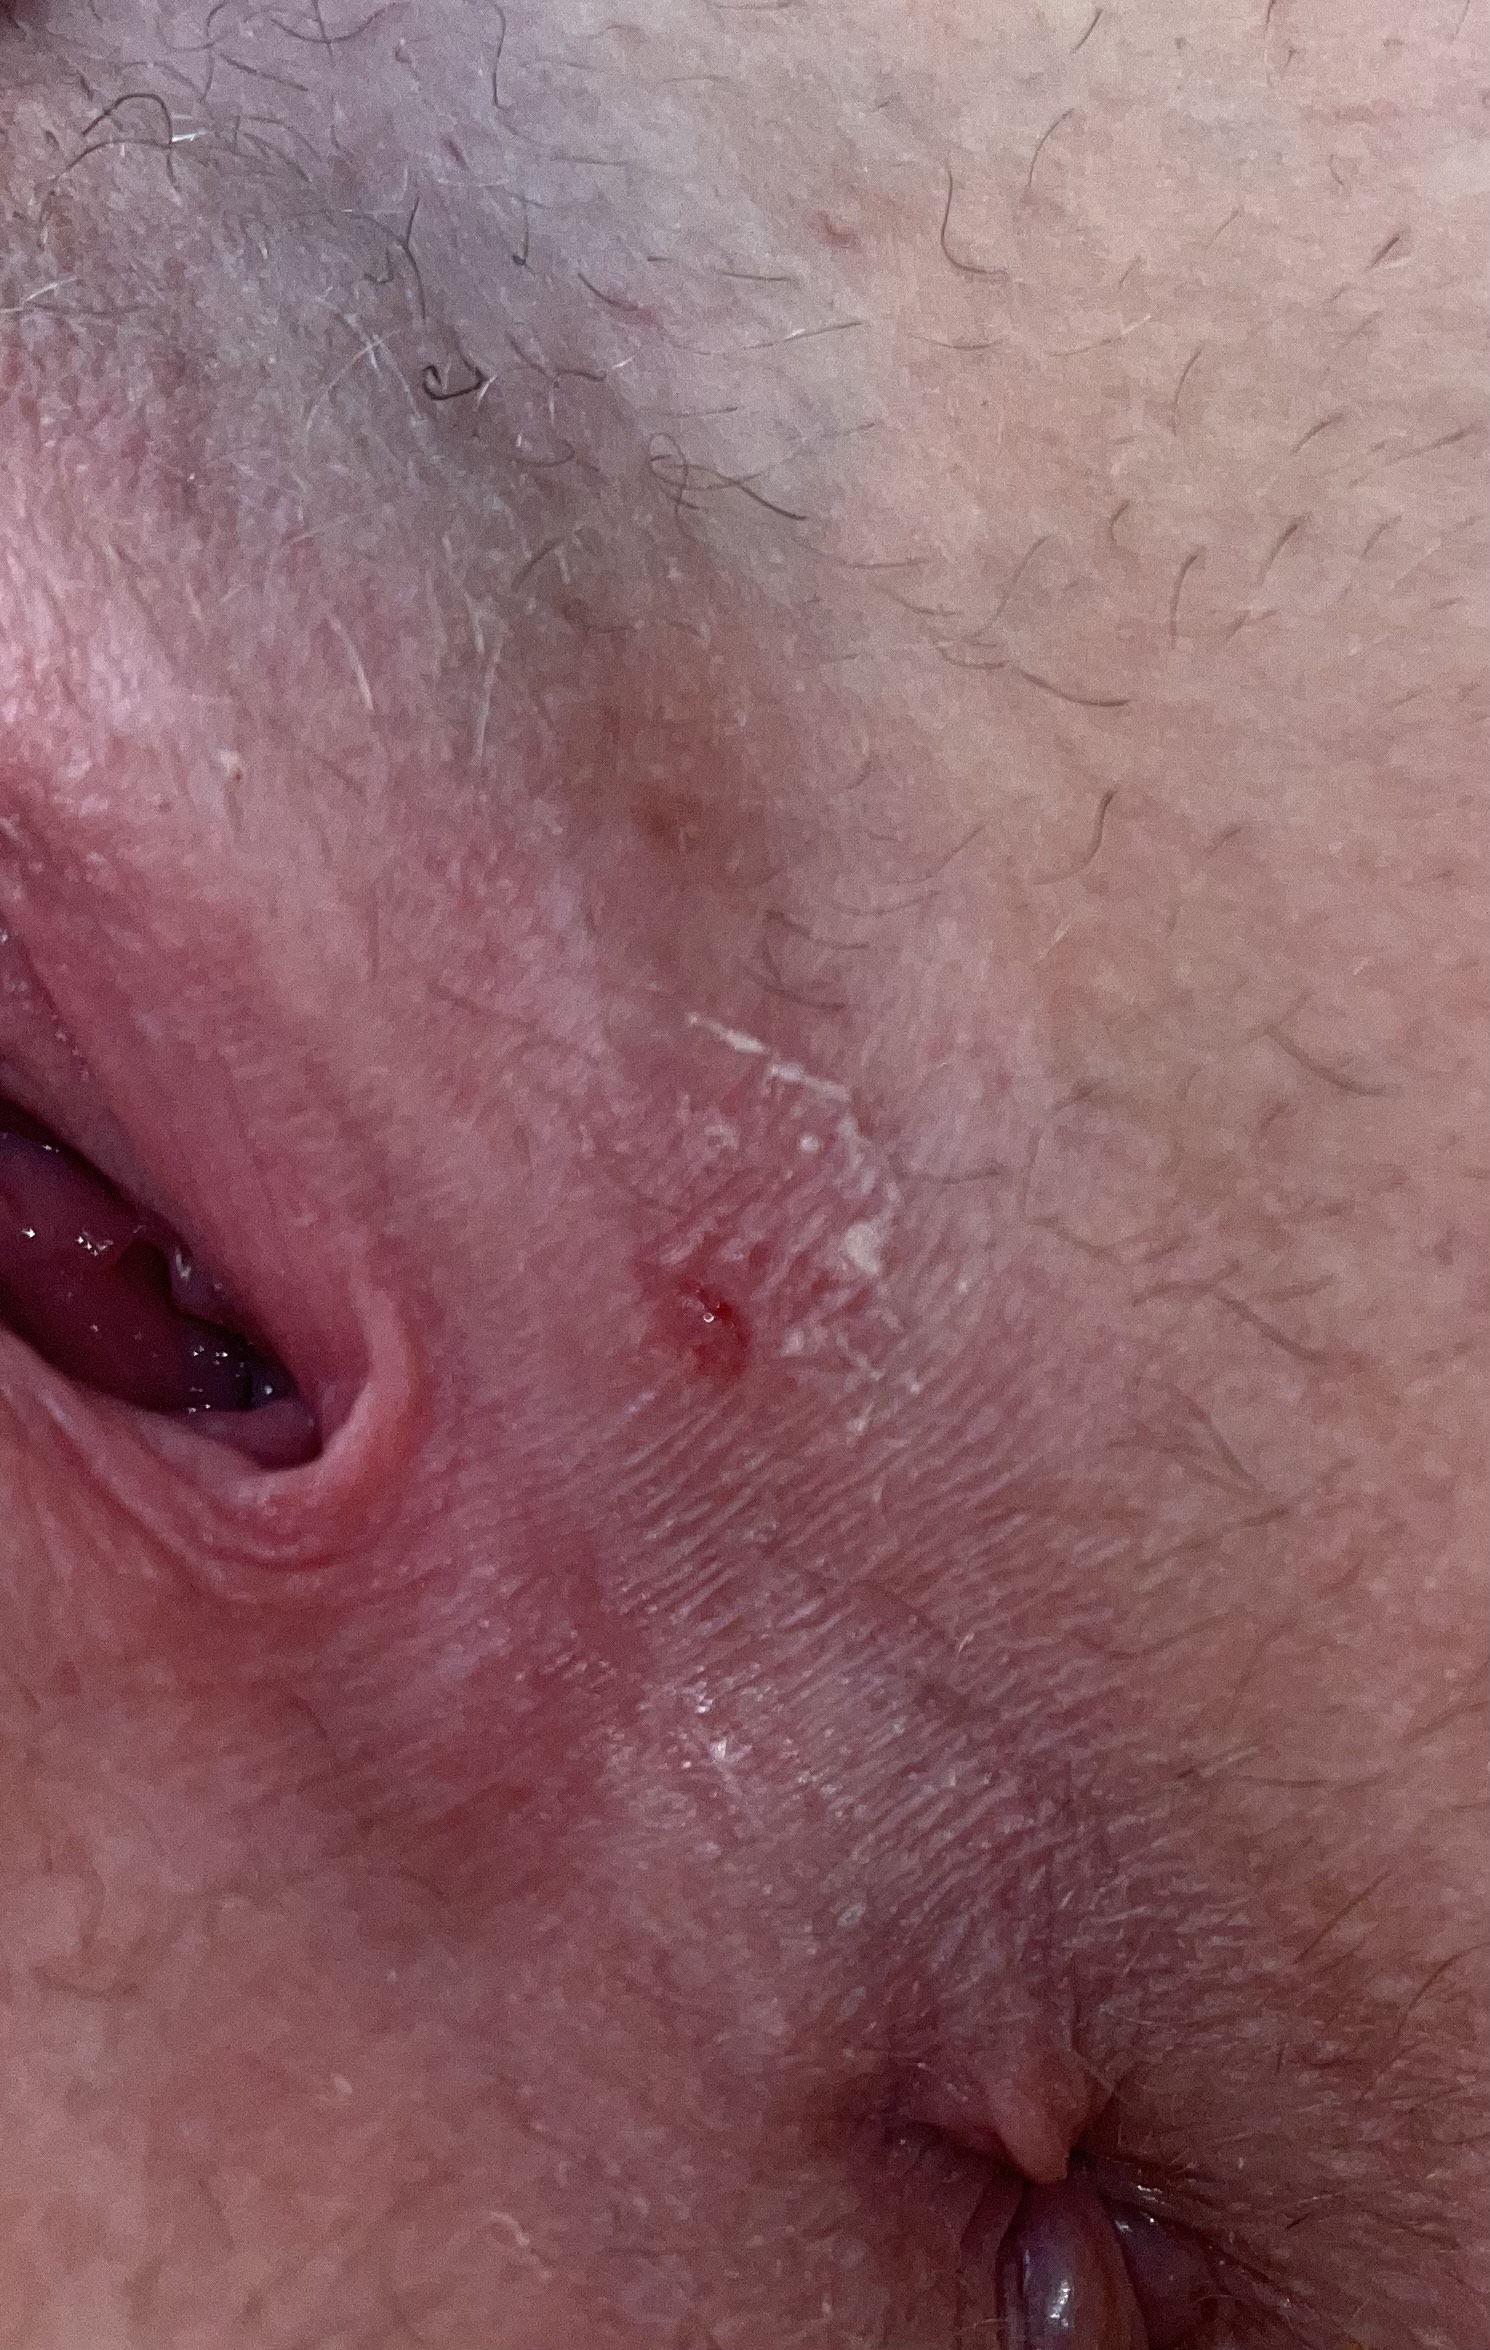 чем можно заразиться при мастурбации сифилисом фото 18